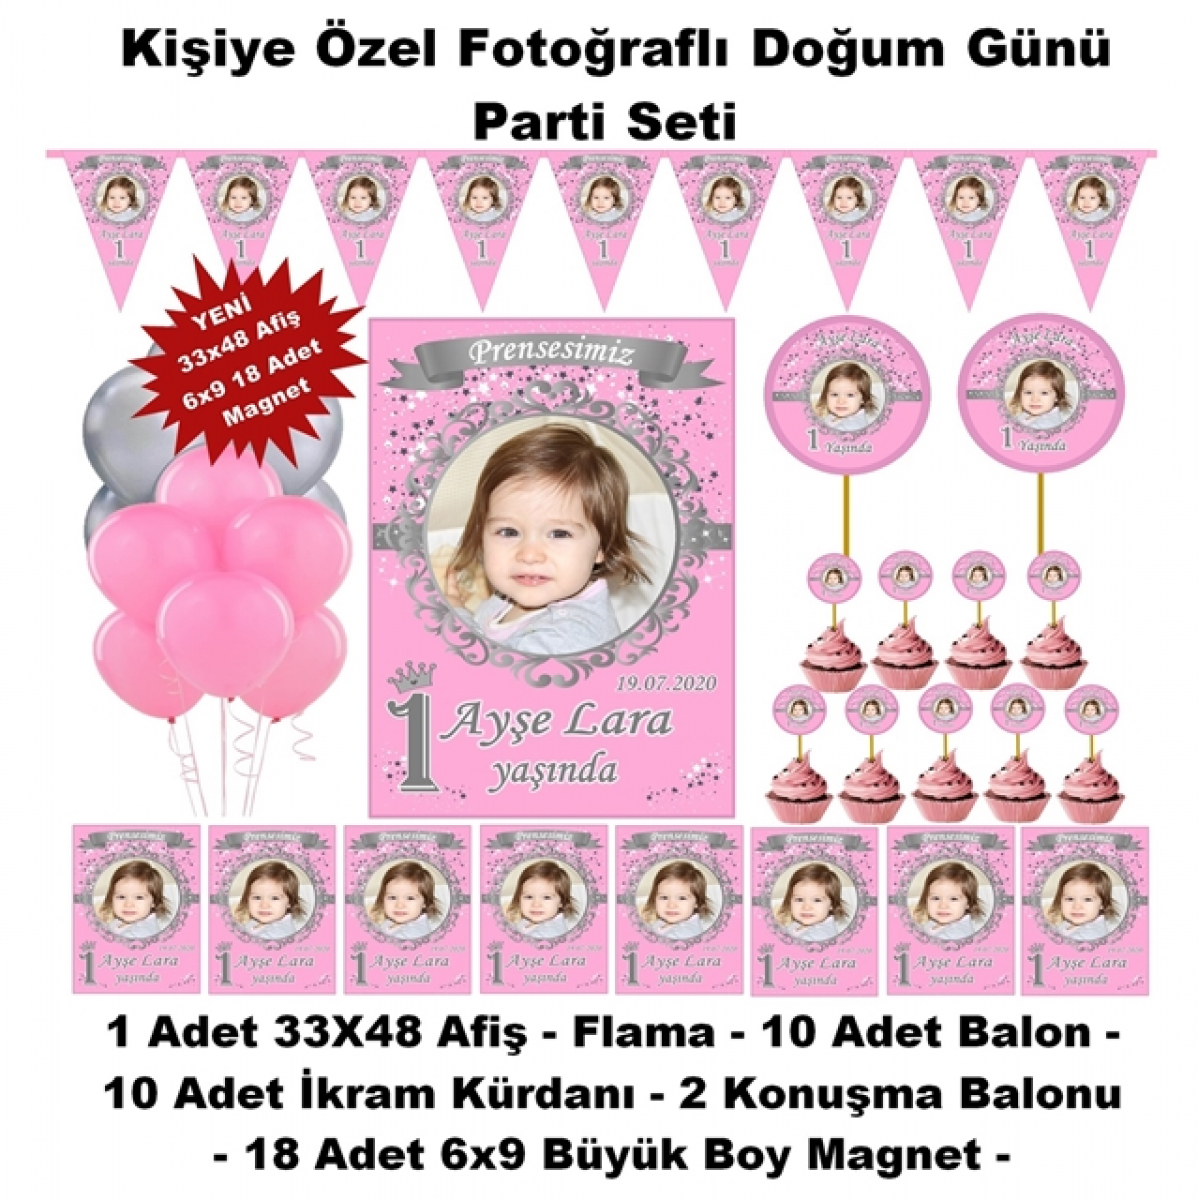 Prenses Doğum Günü Parti Seti Kişiye Özel Hediye Seti (33x48 Afiş-Flama-6x9 18 Magnet) 